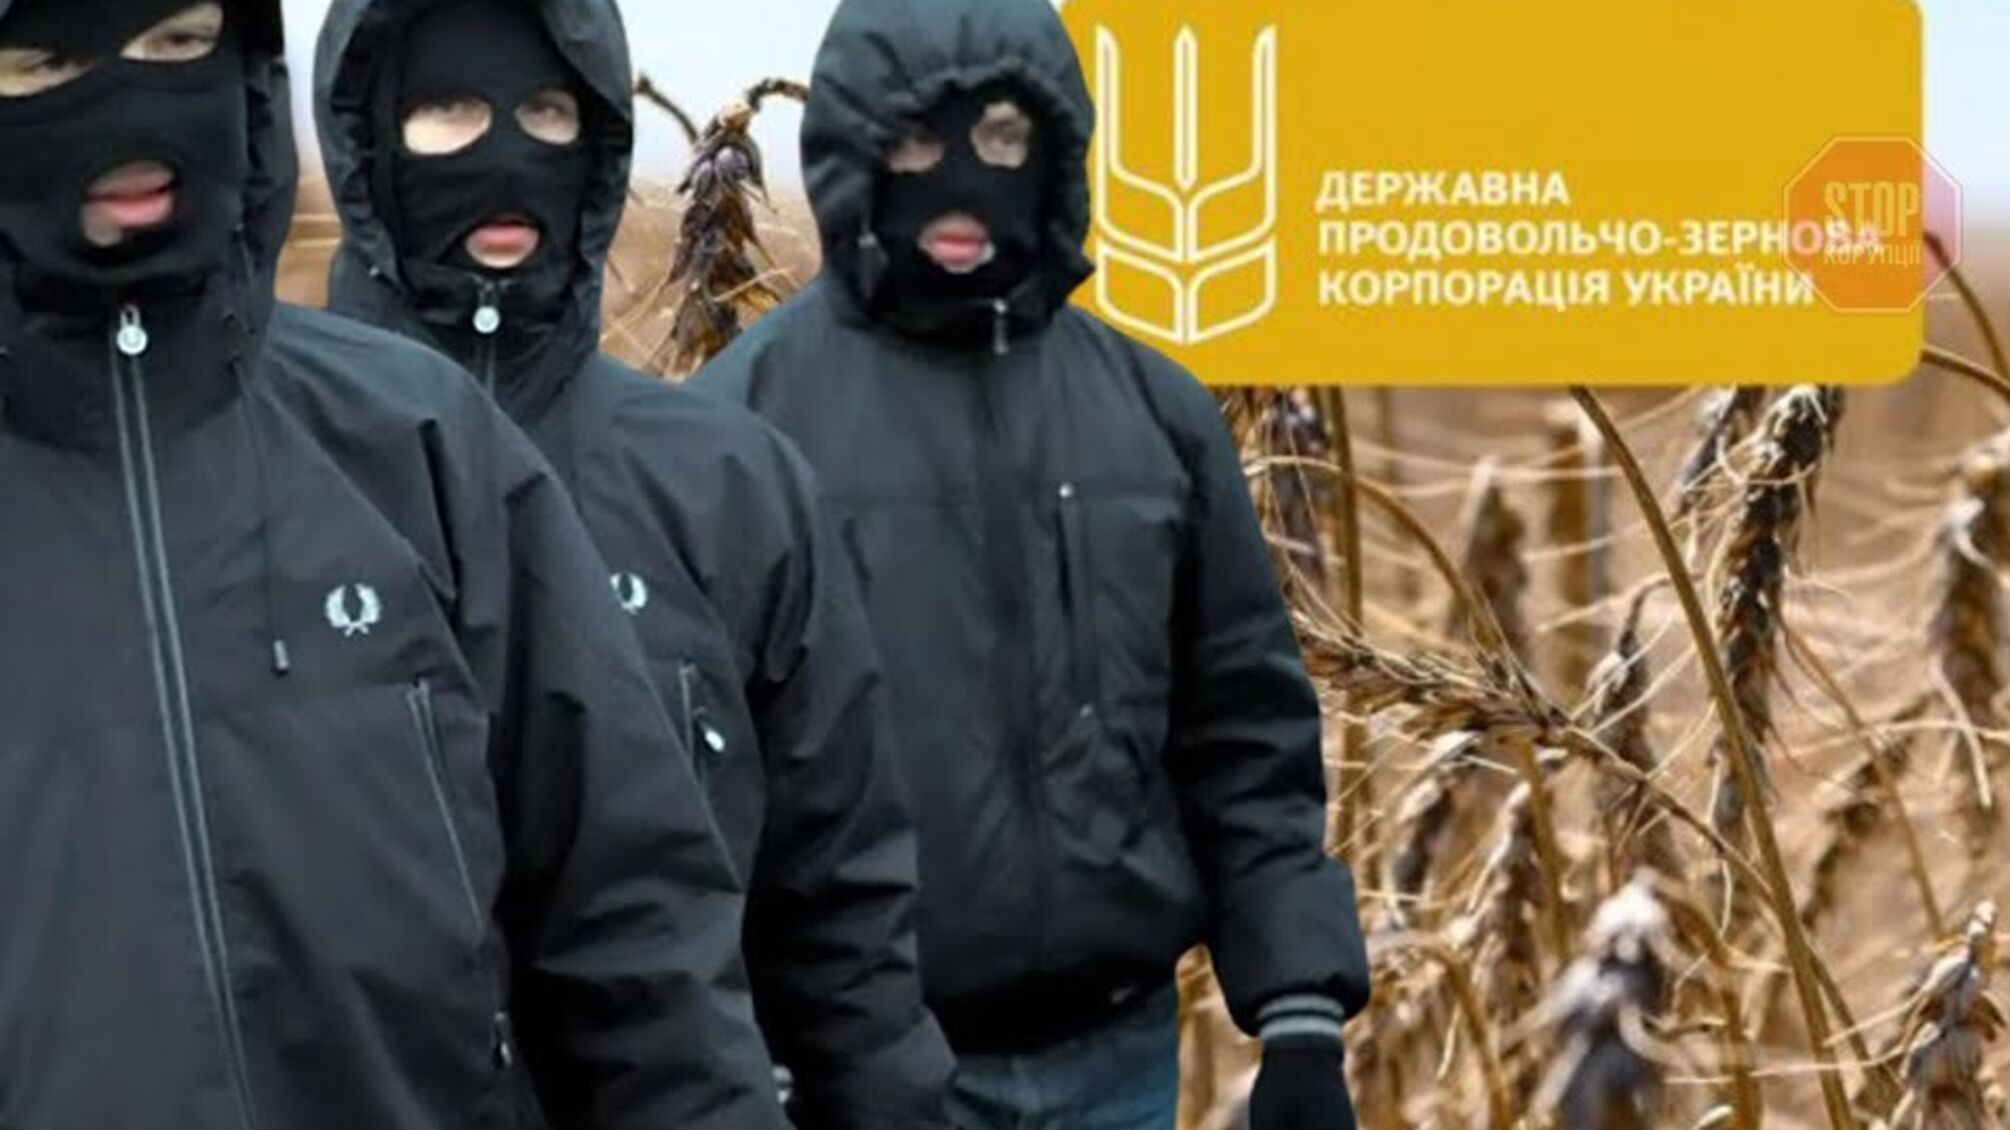 Семейный подряд на предприятиях Государственной продовольственно-зерновой корпорации Украины: братья с темным прошлым возглавили две компании